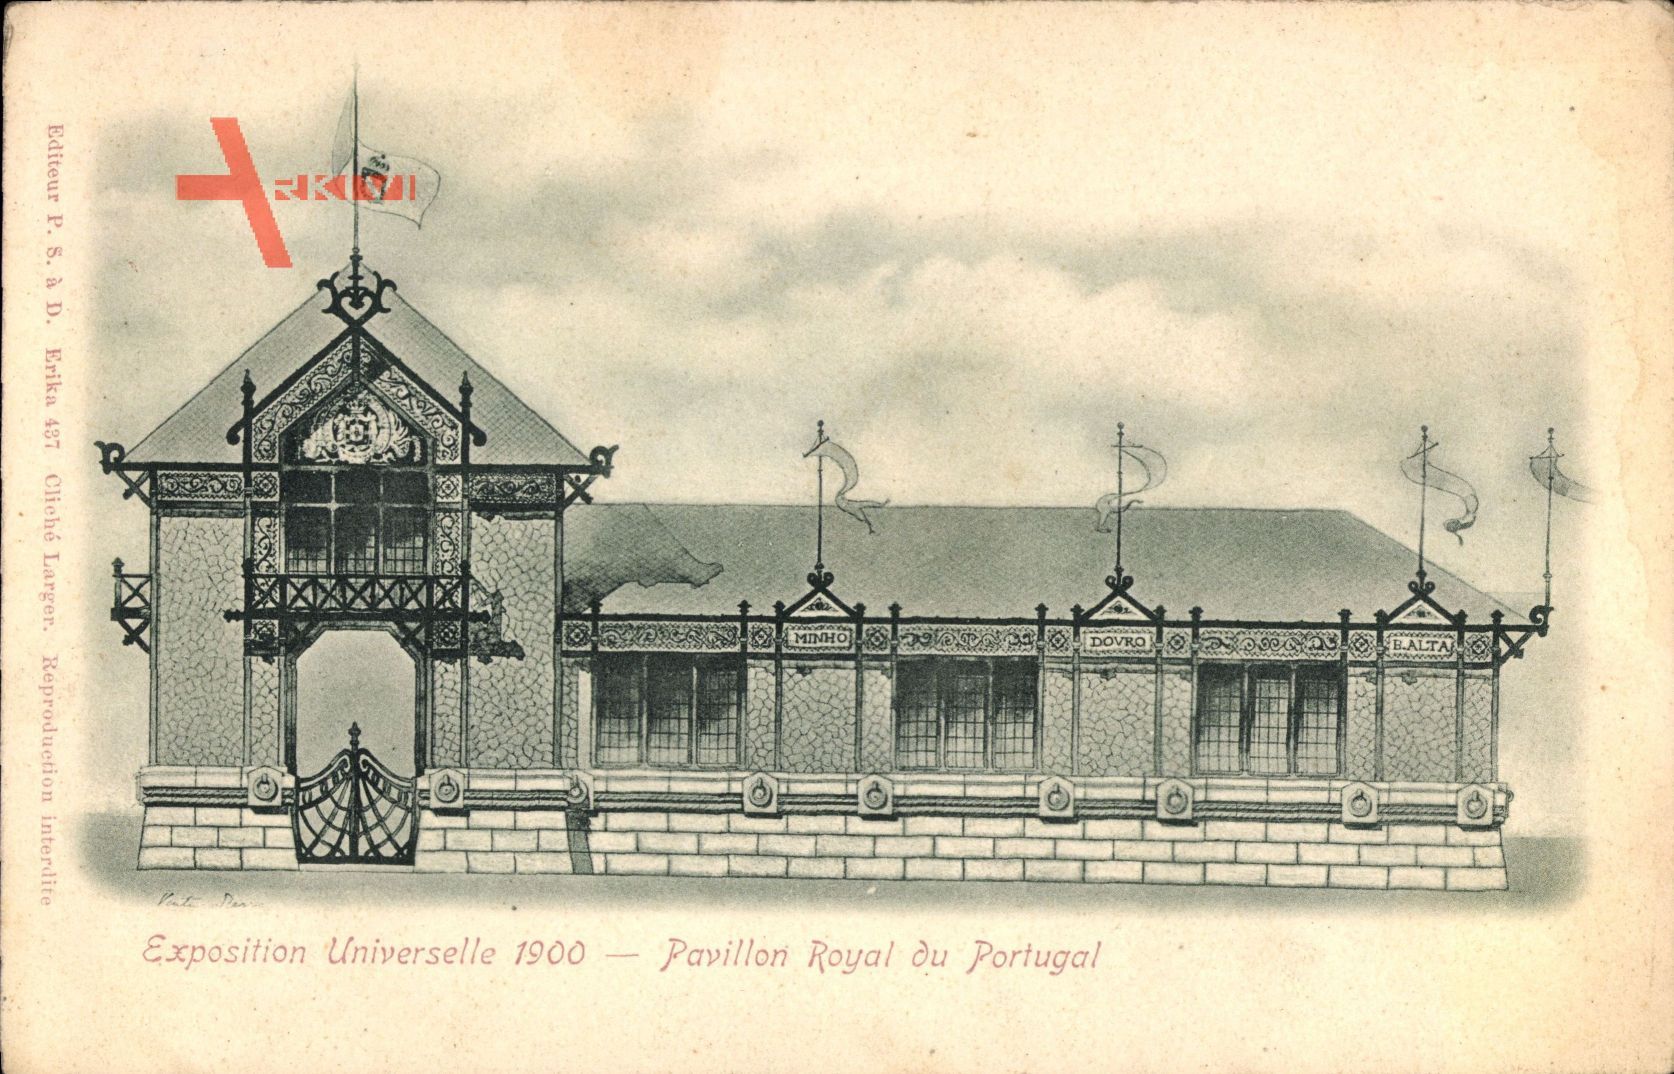 Paris, Pavillon Royal du Portugal, Exposition Universelle 1900, Fassade